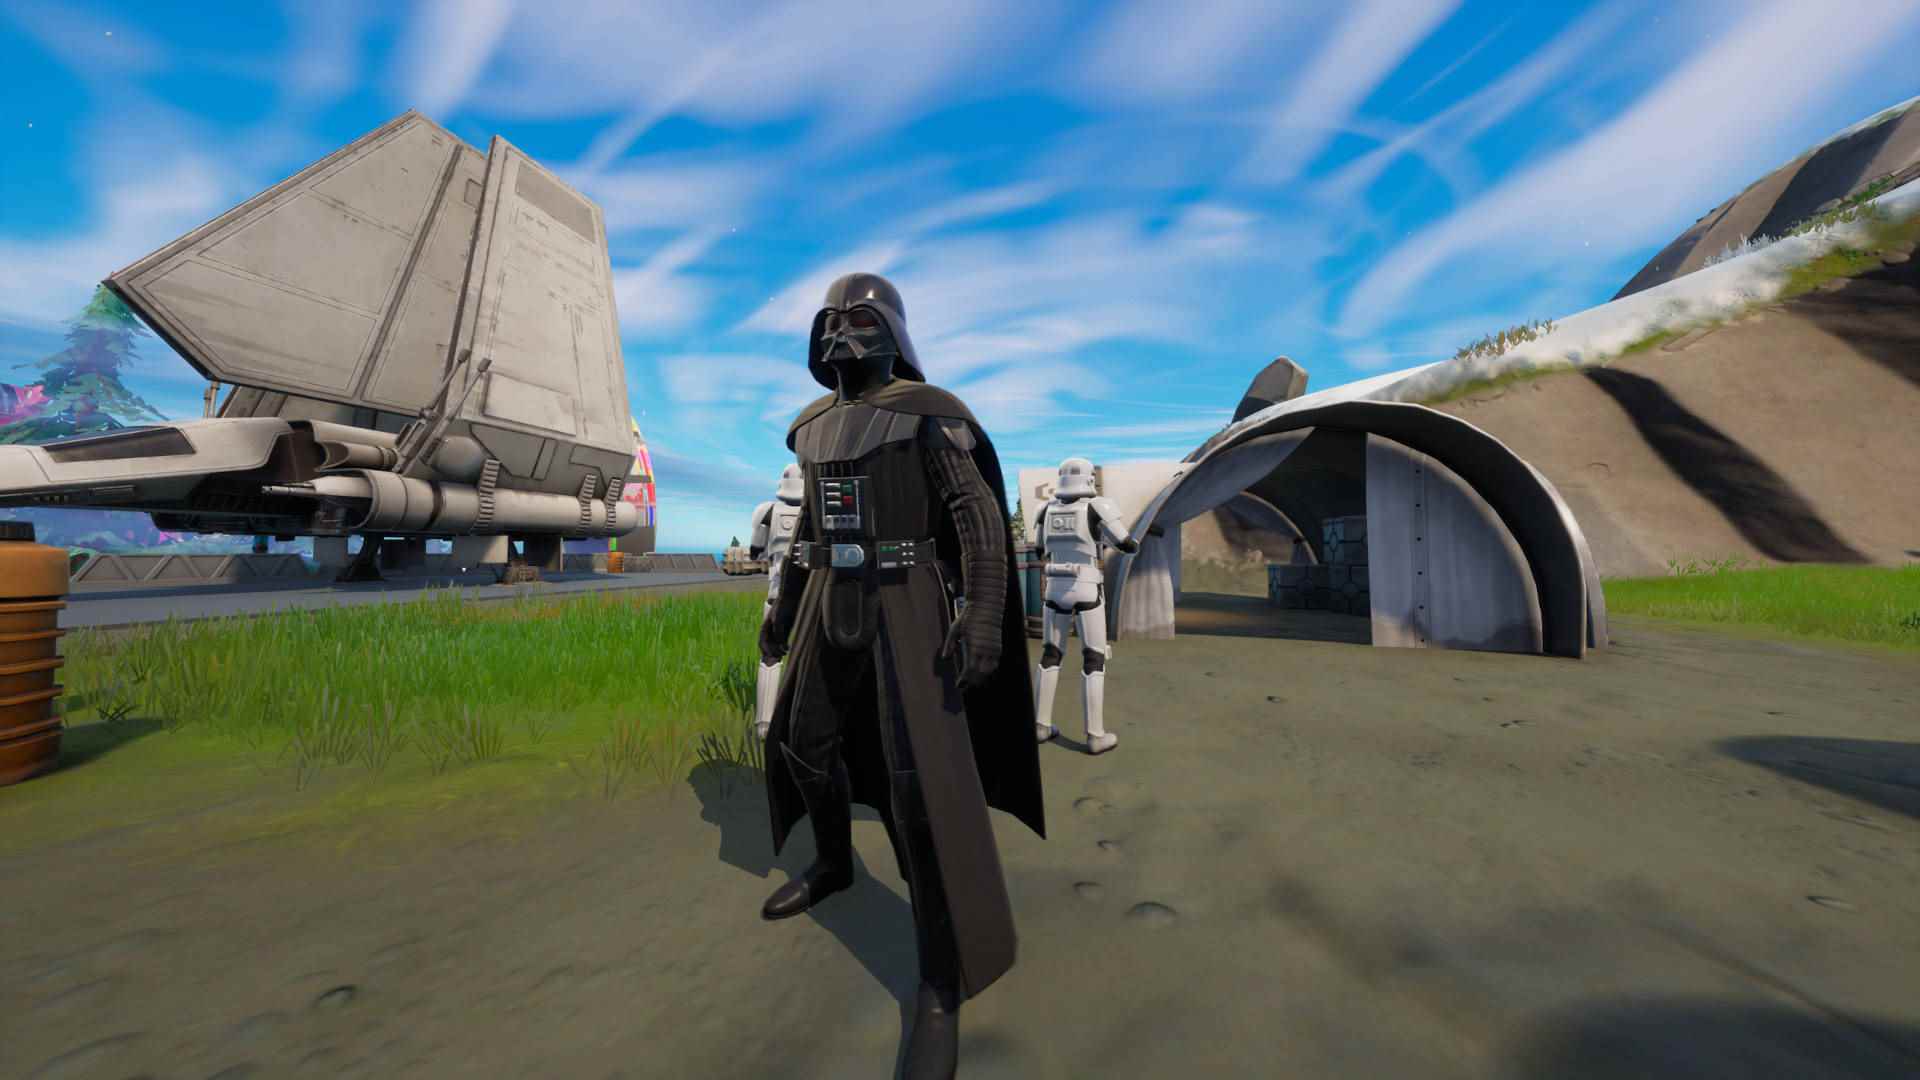 Fortnite Darth Vader - Vader, iki Stormtrooper tarafından çevrili bir İmparatorluk iniş bölgesinde duruyor.